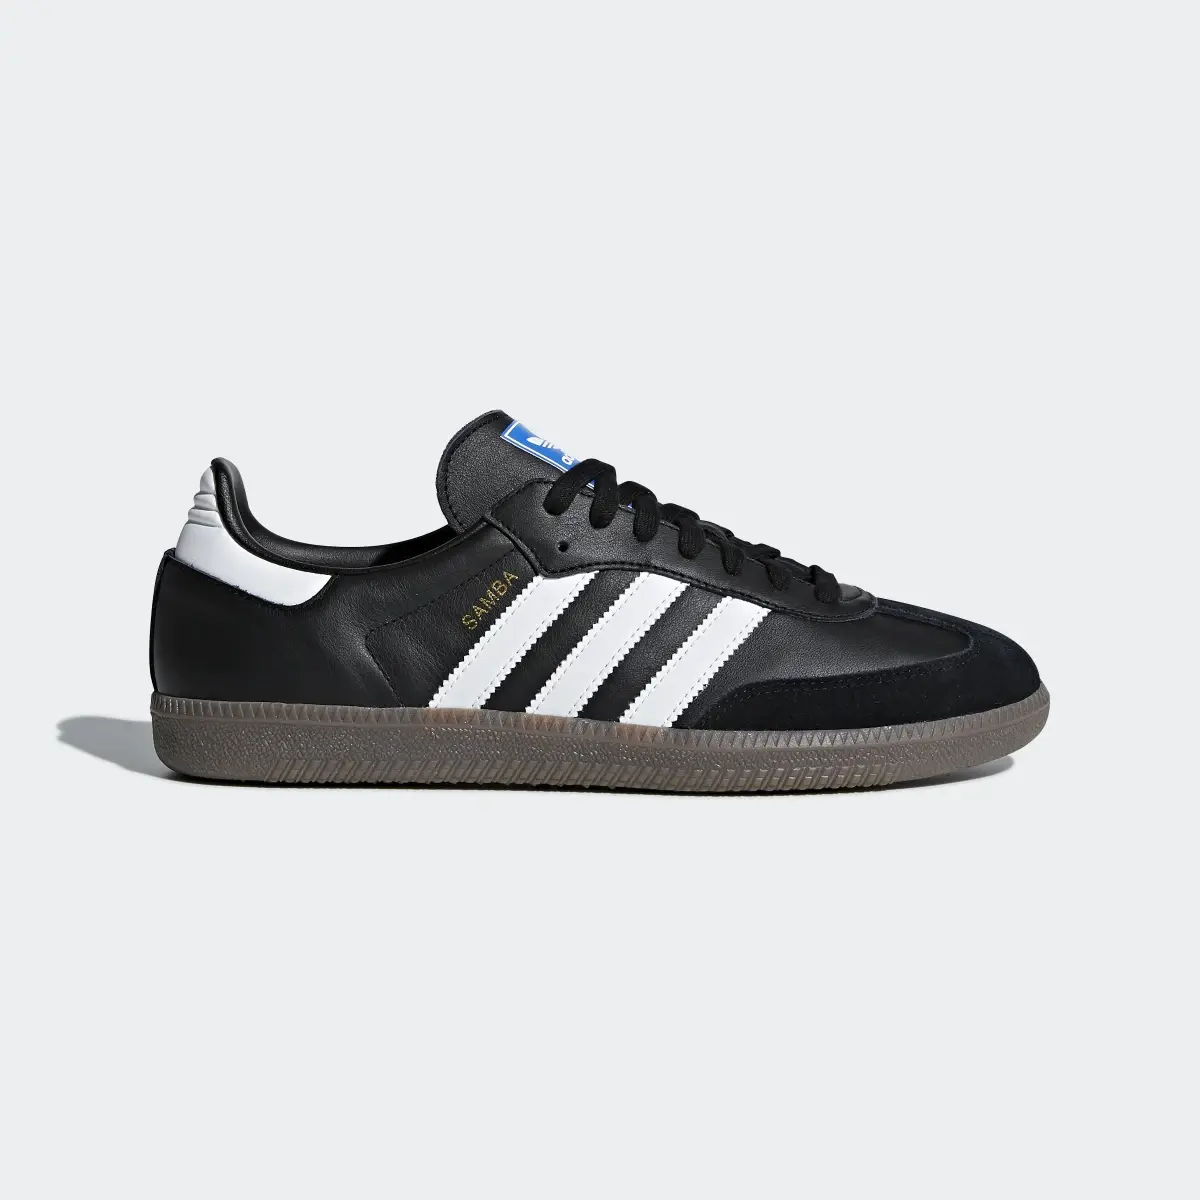 Adidas Samba OG Ayakkabı. 2